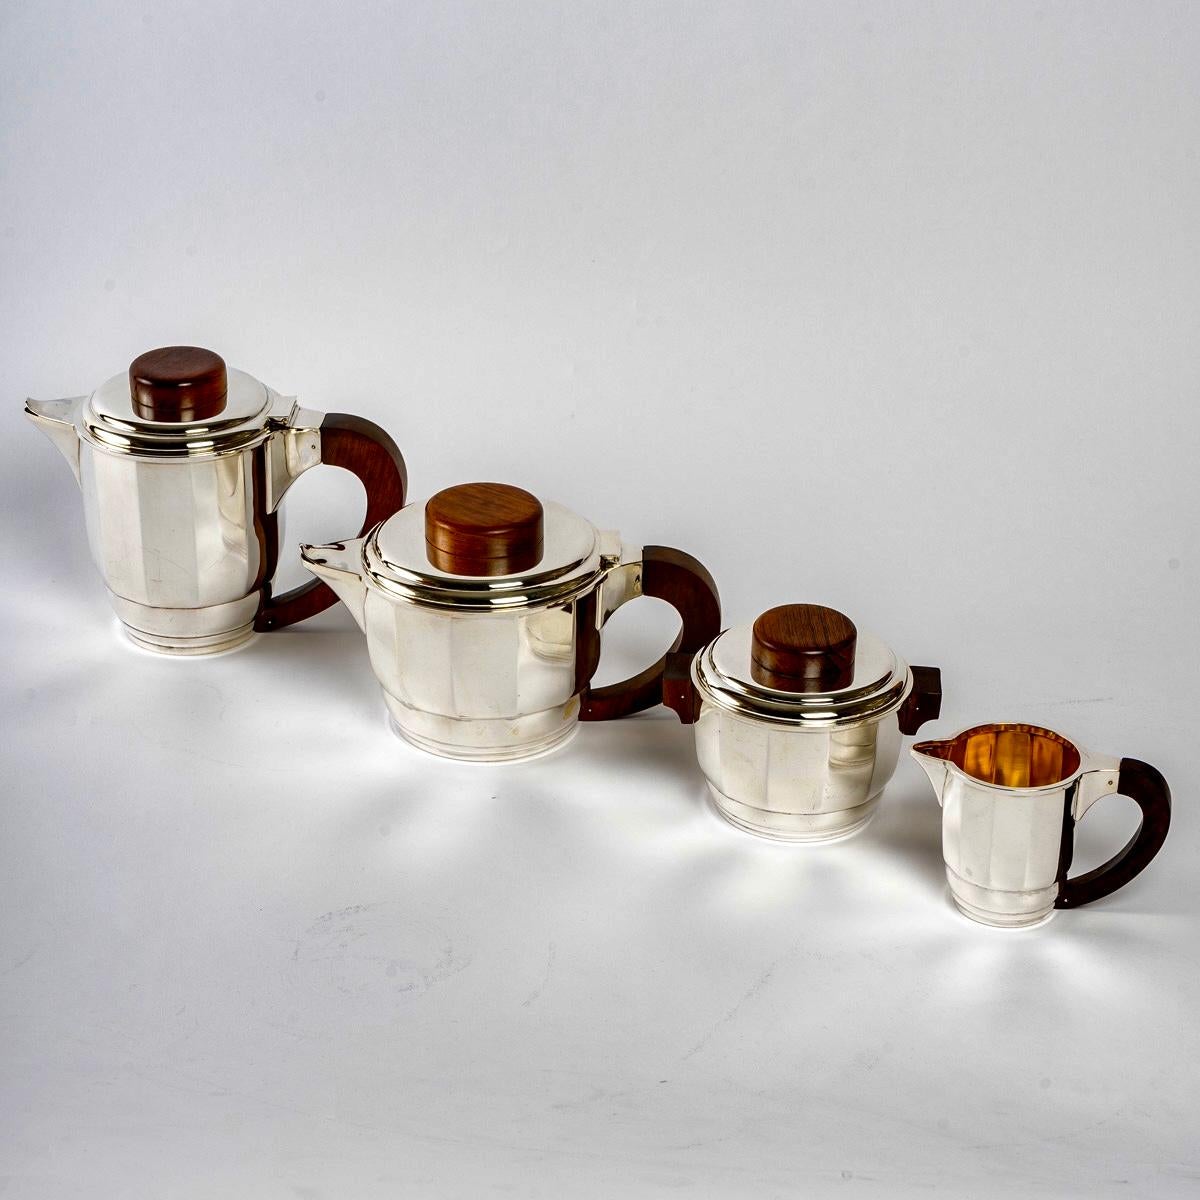 Art Deco Tee- und Kaffeeservice aus reinem Sterlingsilber und Palisanderholz von Puiforcat aus den 1925er Jahren.

Dienst einschließlich:
- eine Kaffeekanne 
- eine Teekanne 
- eine Milchkanne
- einen Zuckertopf 

Minerve Massivsilber 950/1000